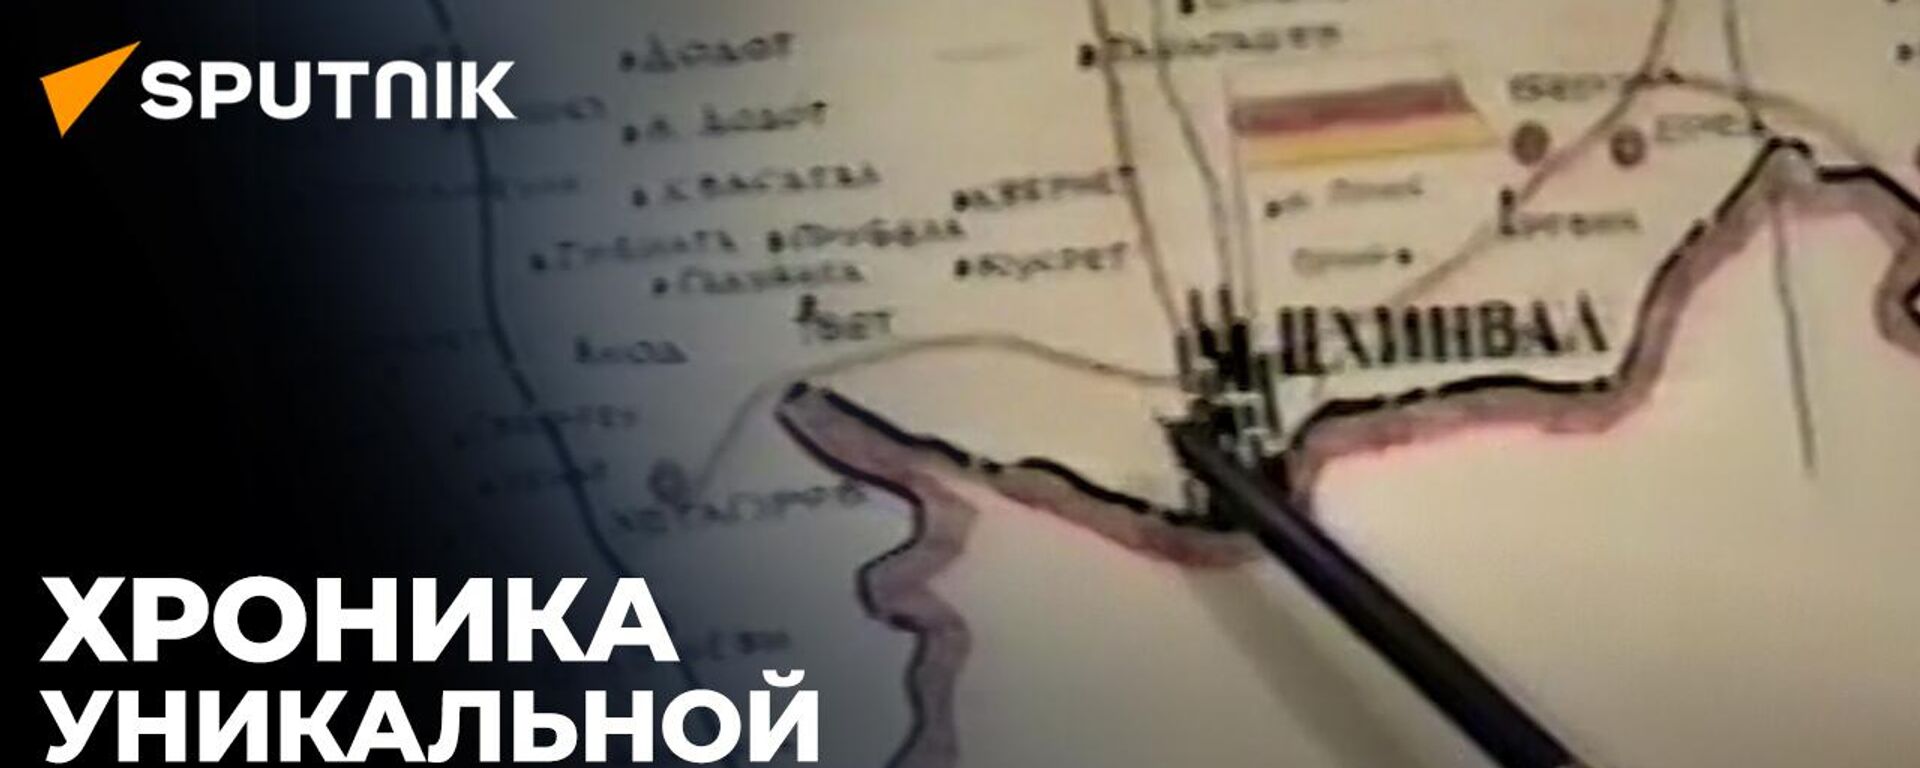 Миссия - спасти жизни людей: история миротворческой операции в Южной Осетии - Sputnik Южная Осетия, 1920, 14.07.2022